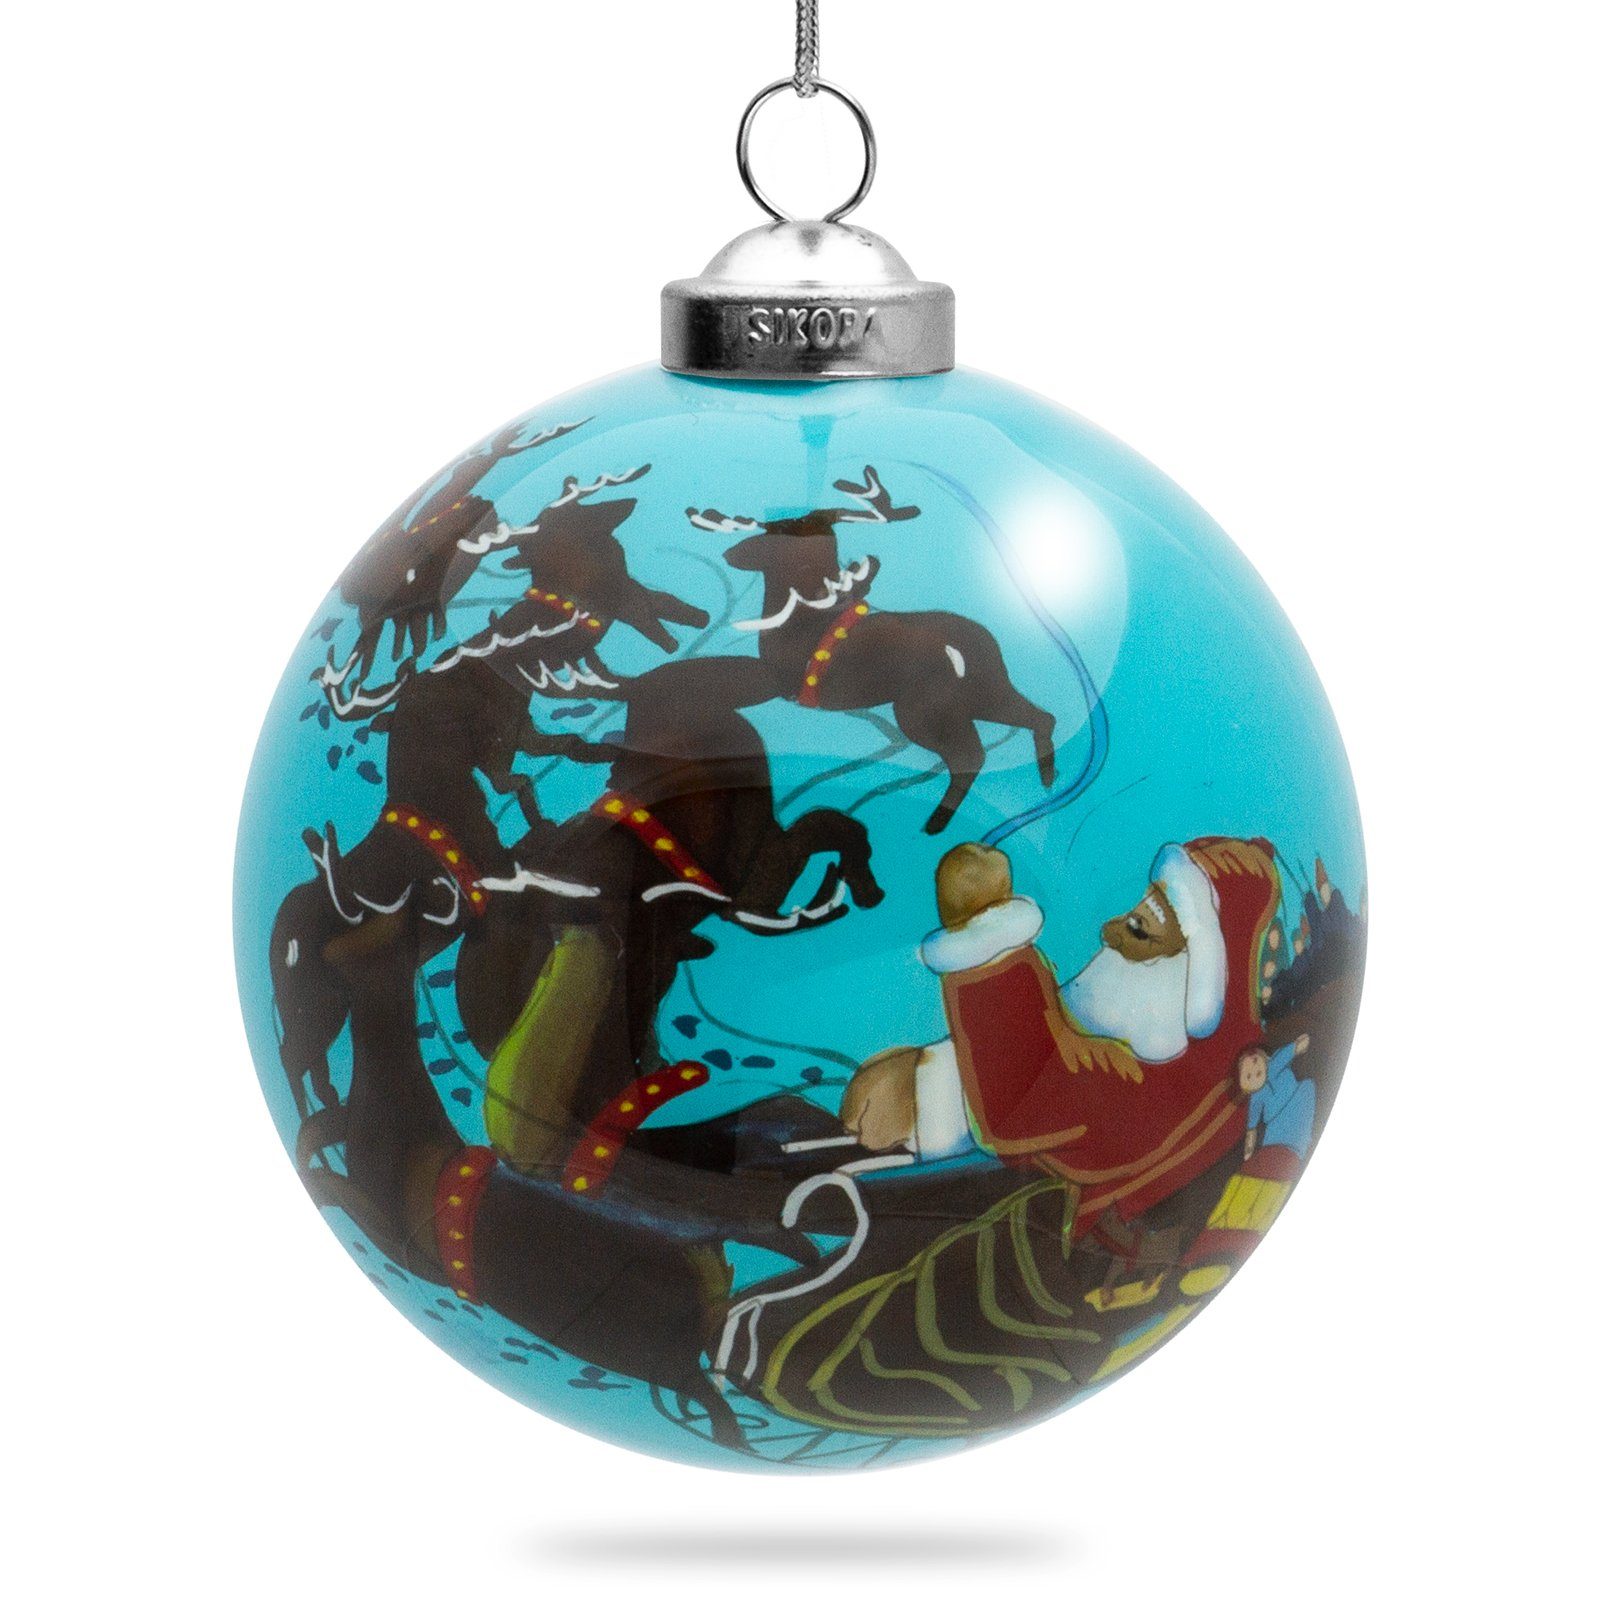 Weihnachtskugel K08-26 Christbaumschmuck Rentierschlitten SIKORA cm D: Glaskugel mit Innenglasmalerei SIKORA 7,5 Weihnachtsmann